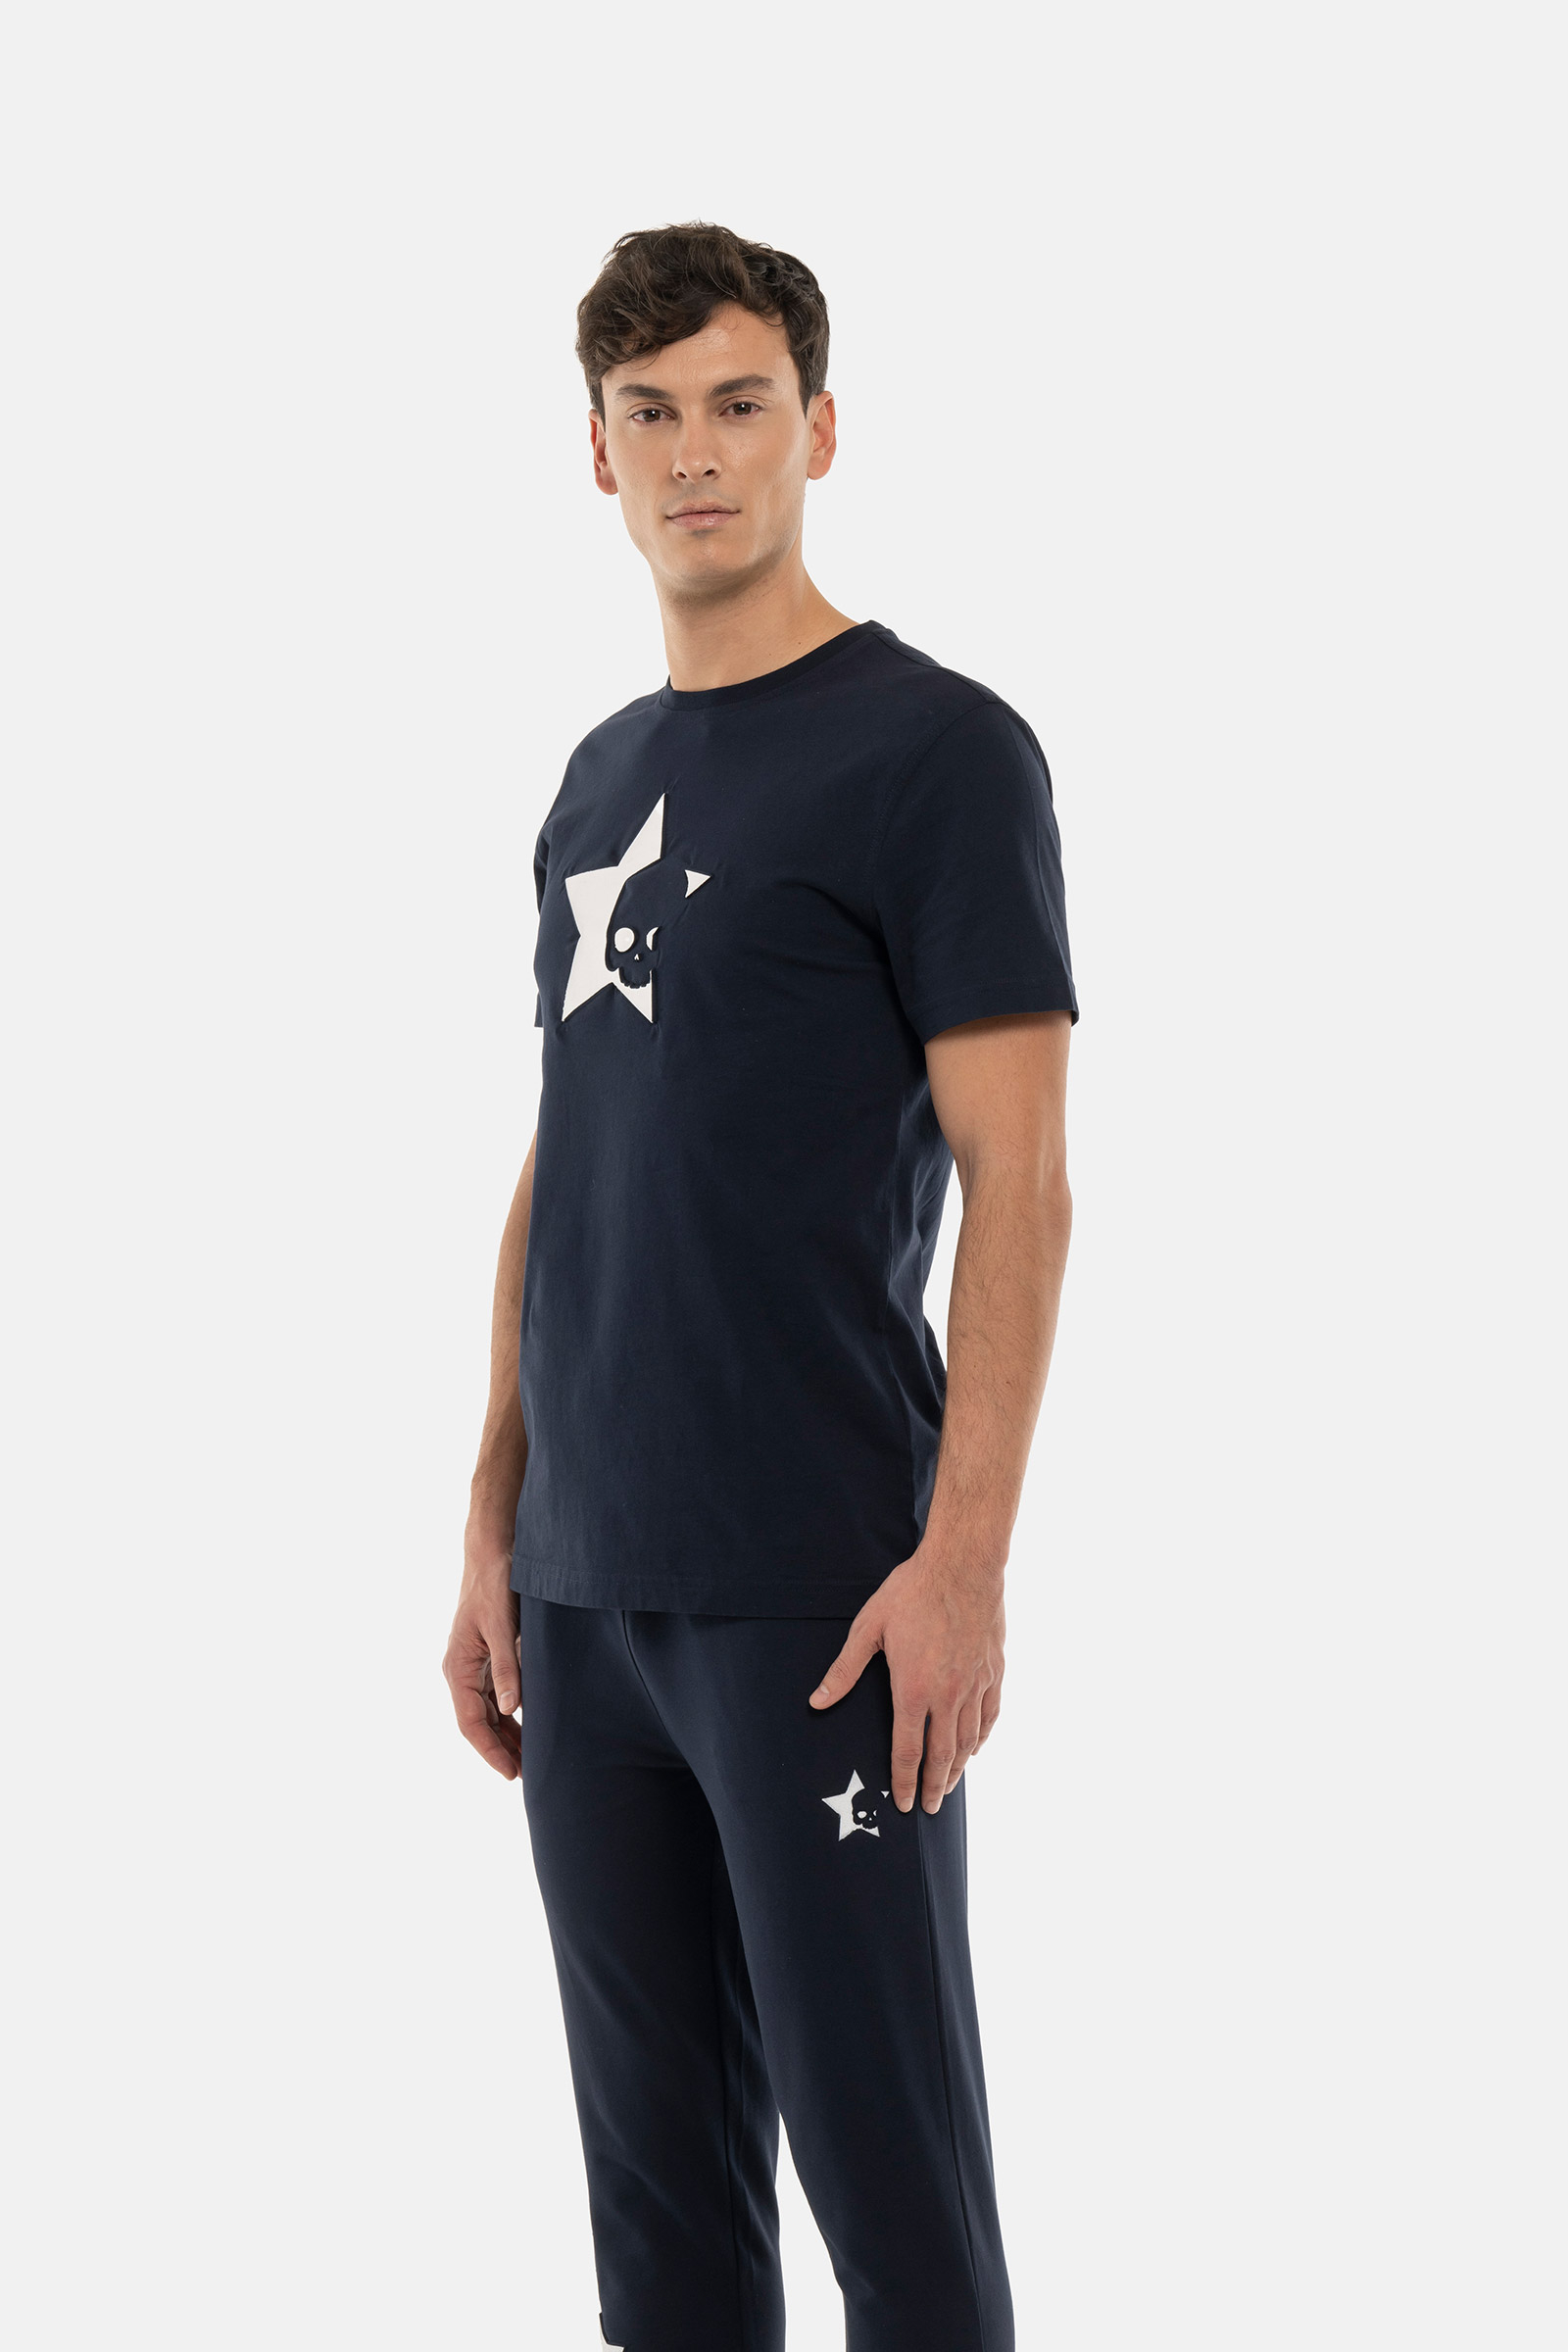 STARS TEE - BLUE - Hydrogen - Luxury Sportwear